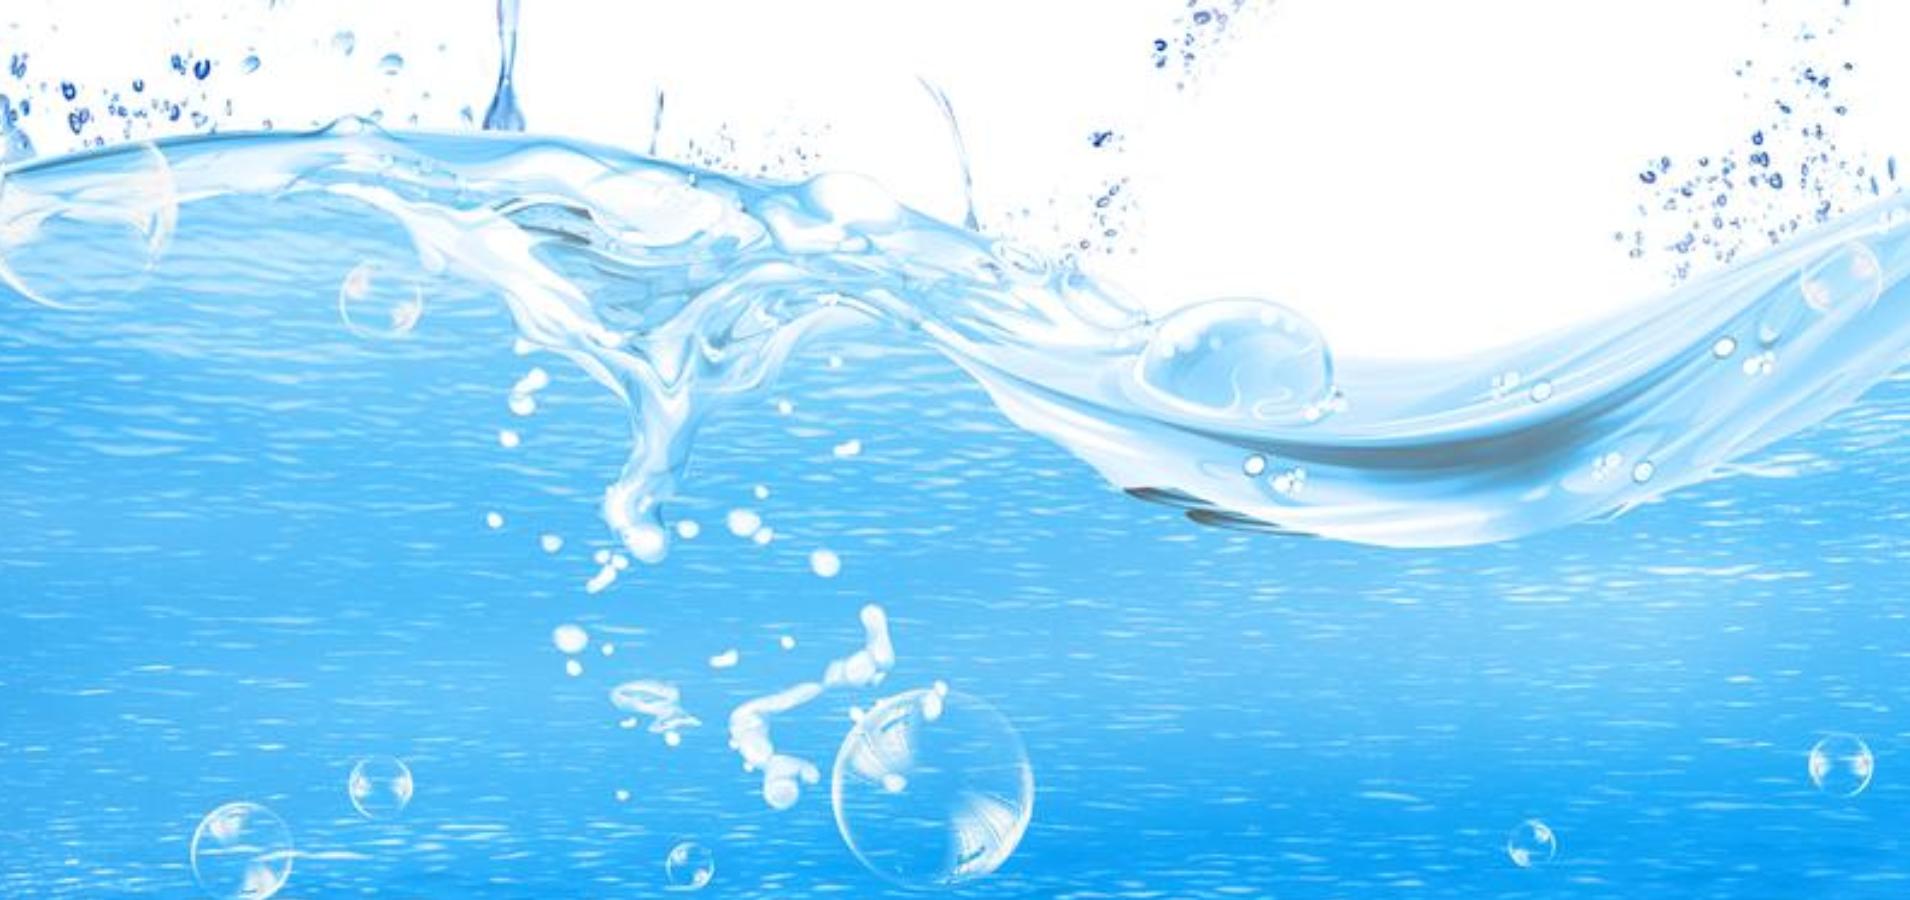 改善水生態  循環水資源